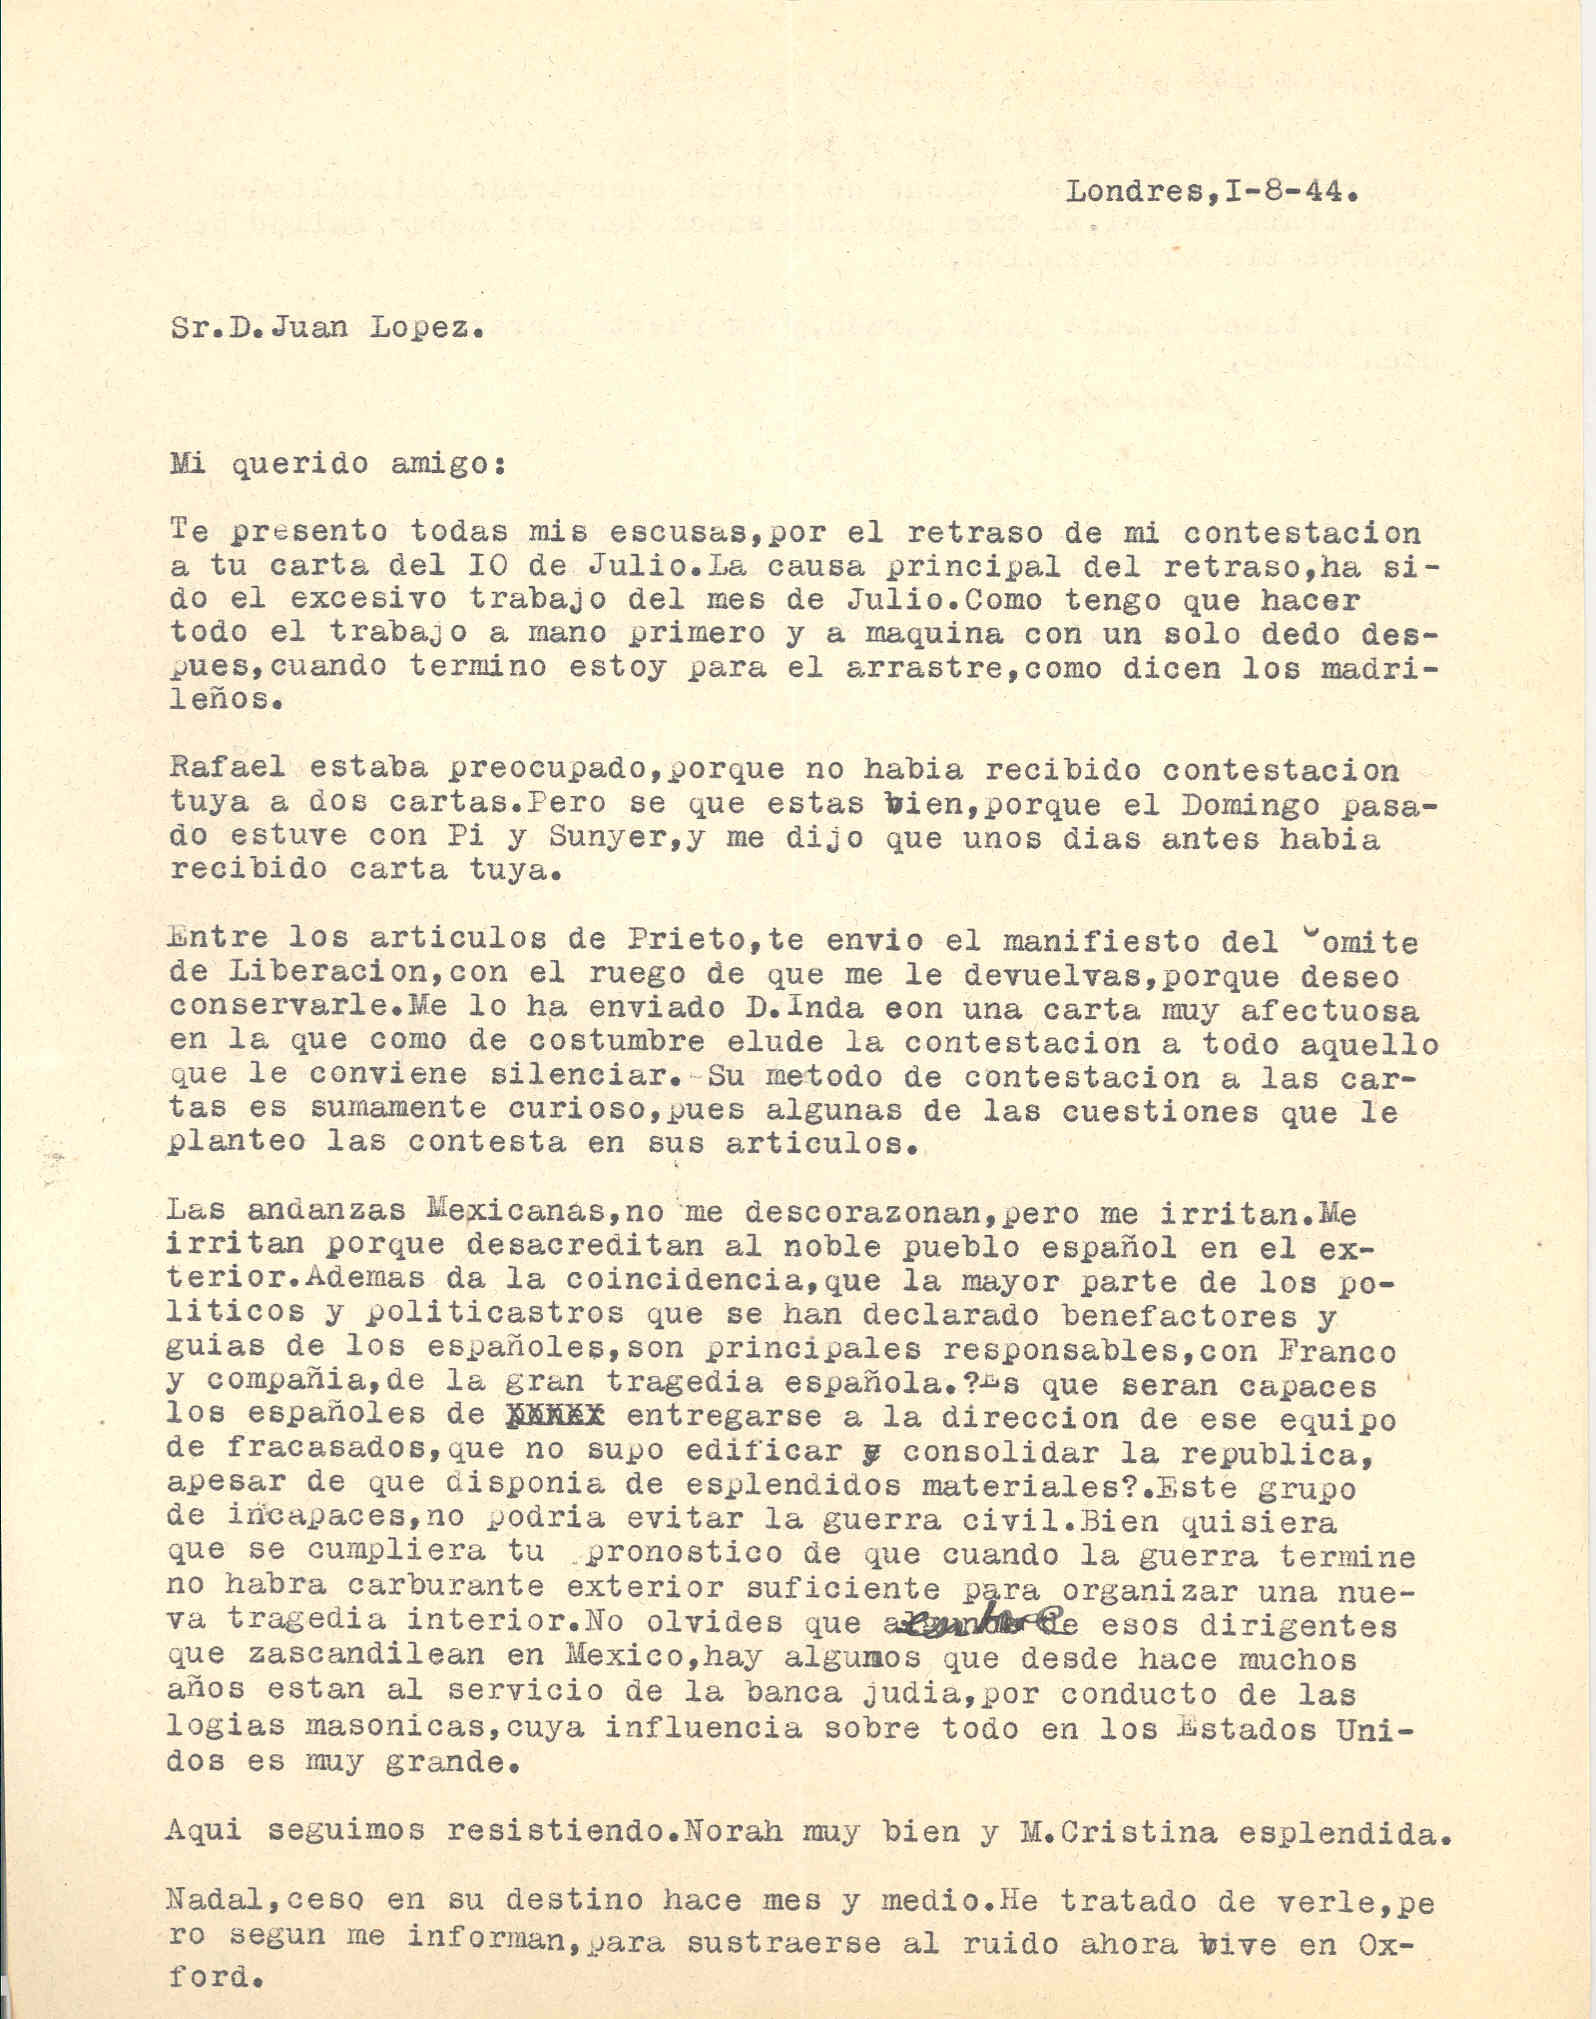 Carta de Segismundo Casado explicando la responsabilidad de Franco y compañía en la tragedia española.